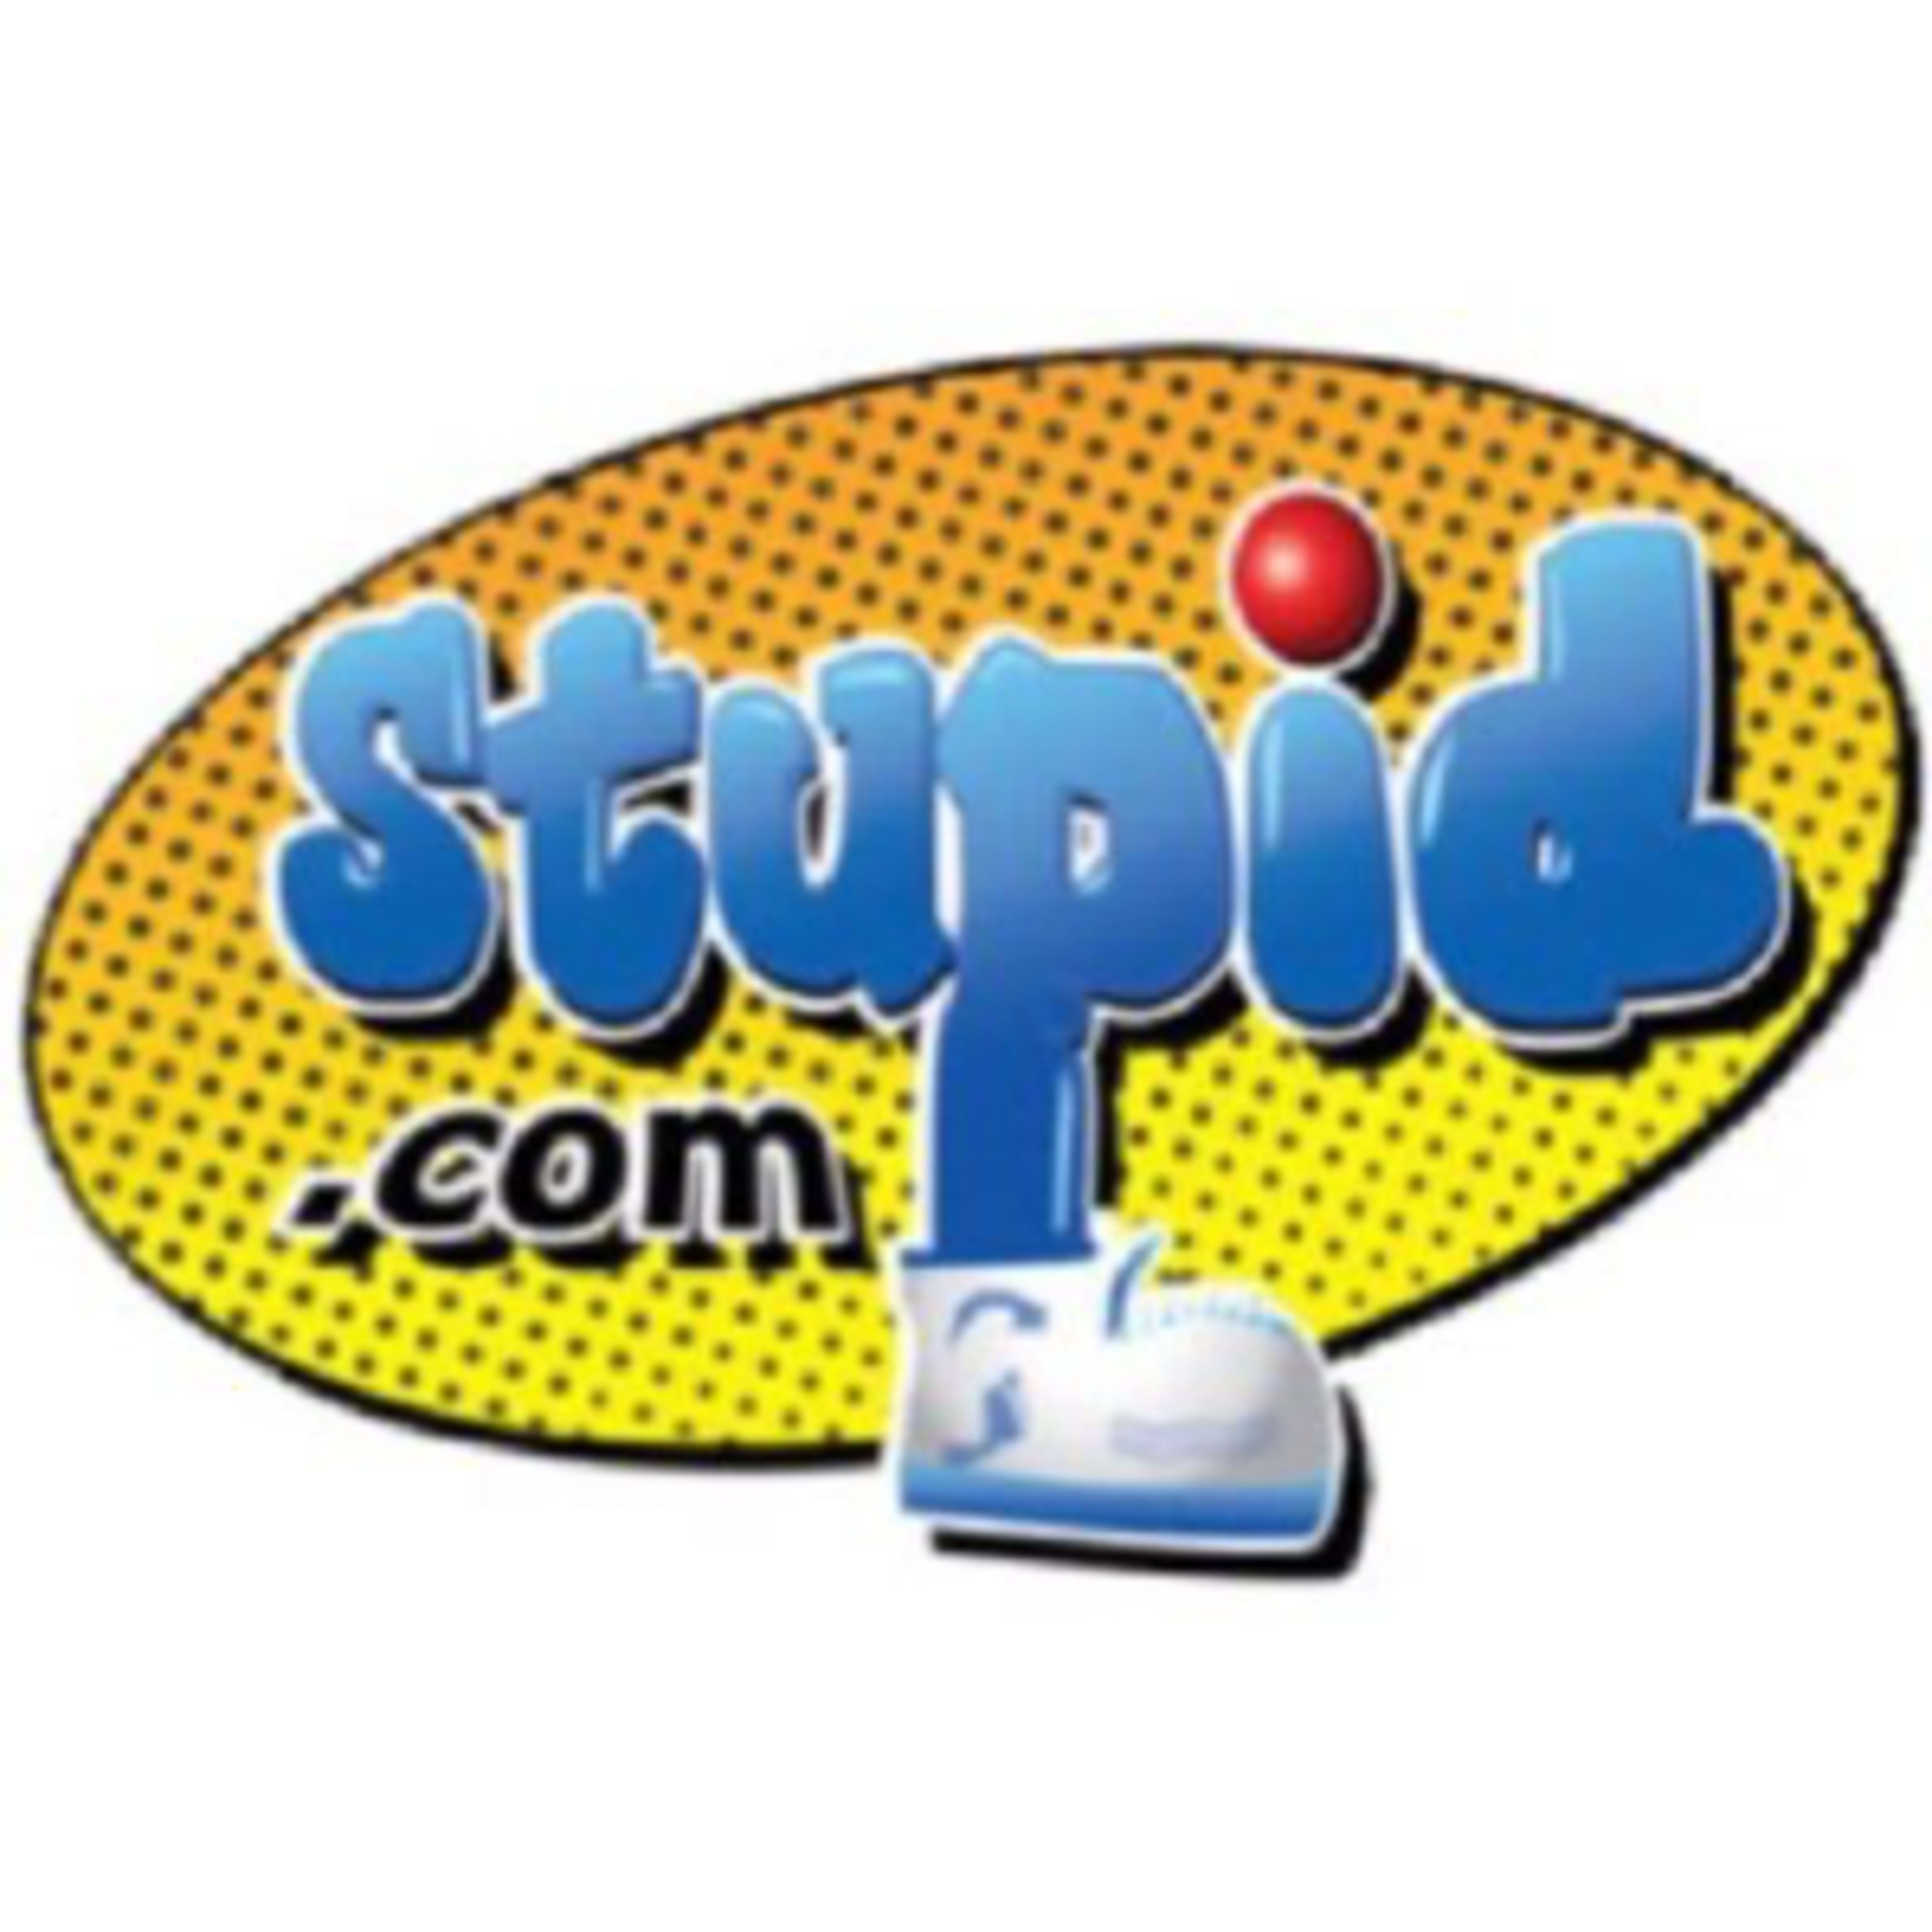 Stupid.com Code